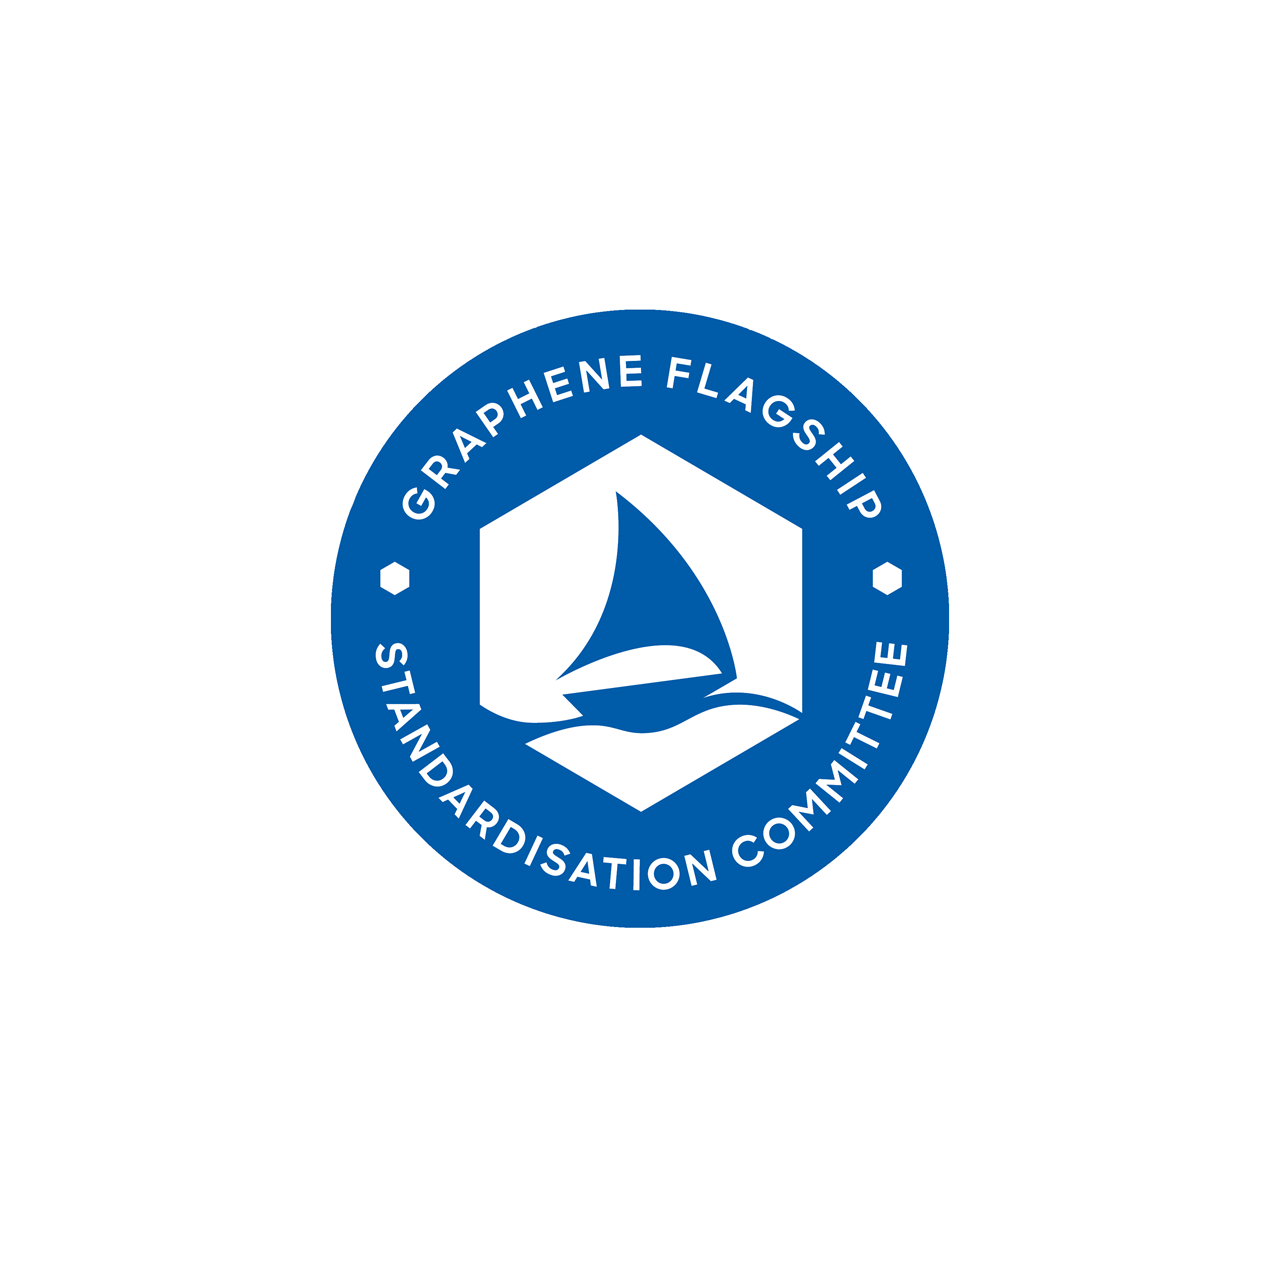 Graphene Flagship Standardisation Committee logo